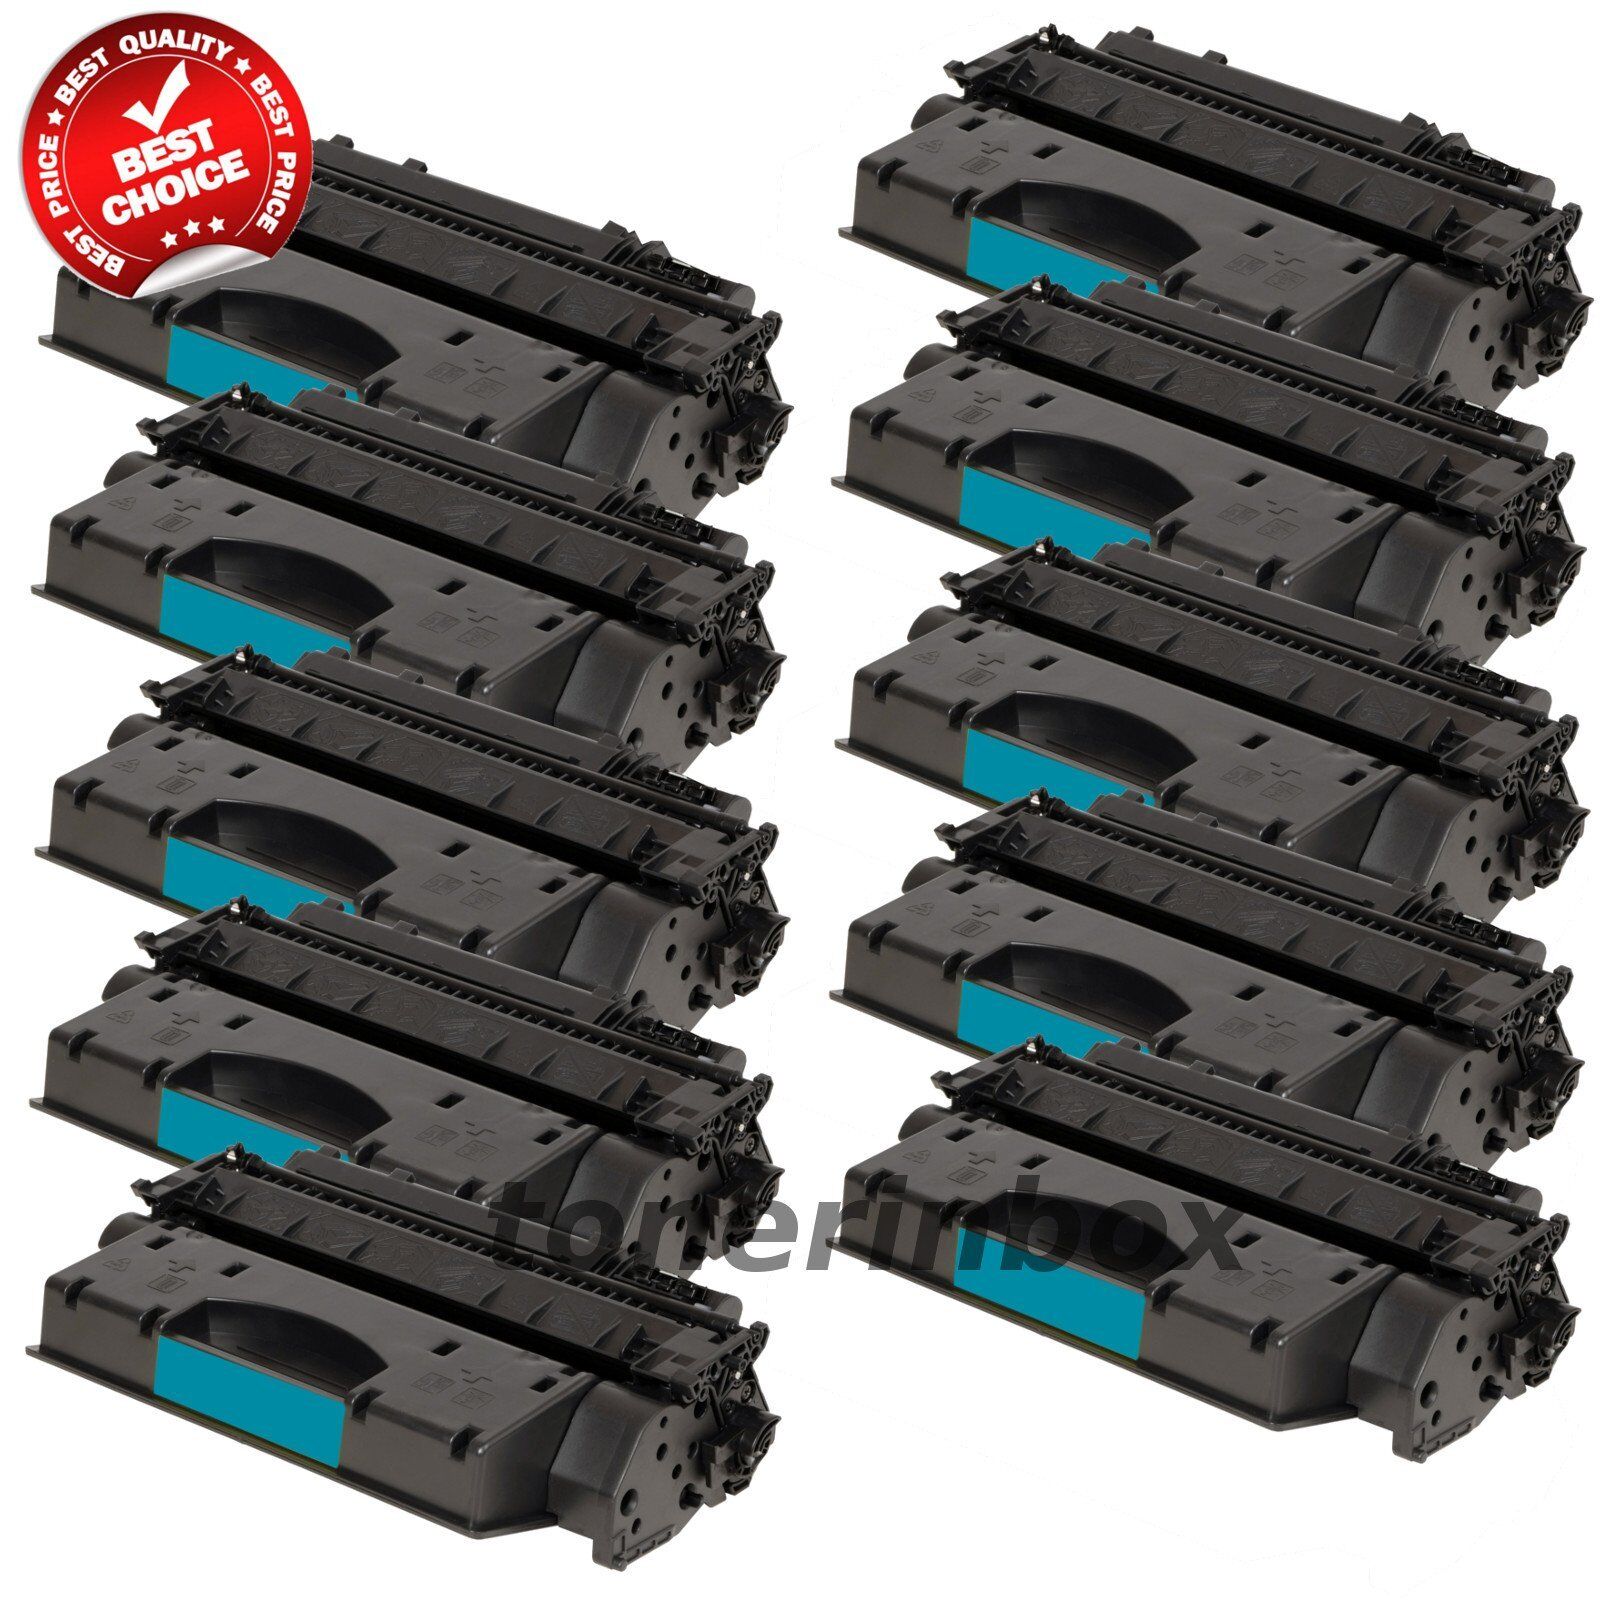 10pk Compatible CE505X 05X HY Toner Cartridges for LaserJet P2055 P2055dn P2055x